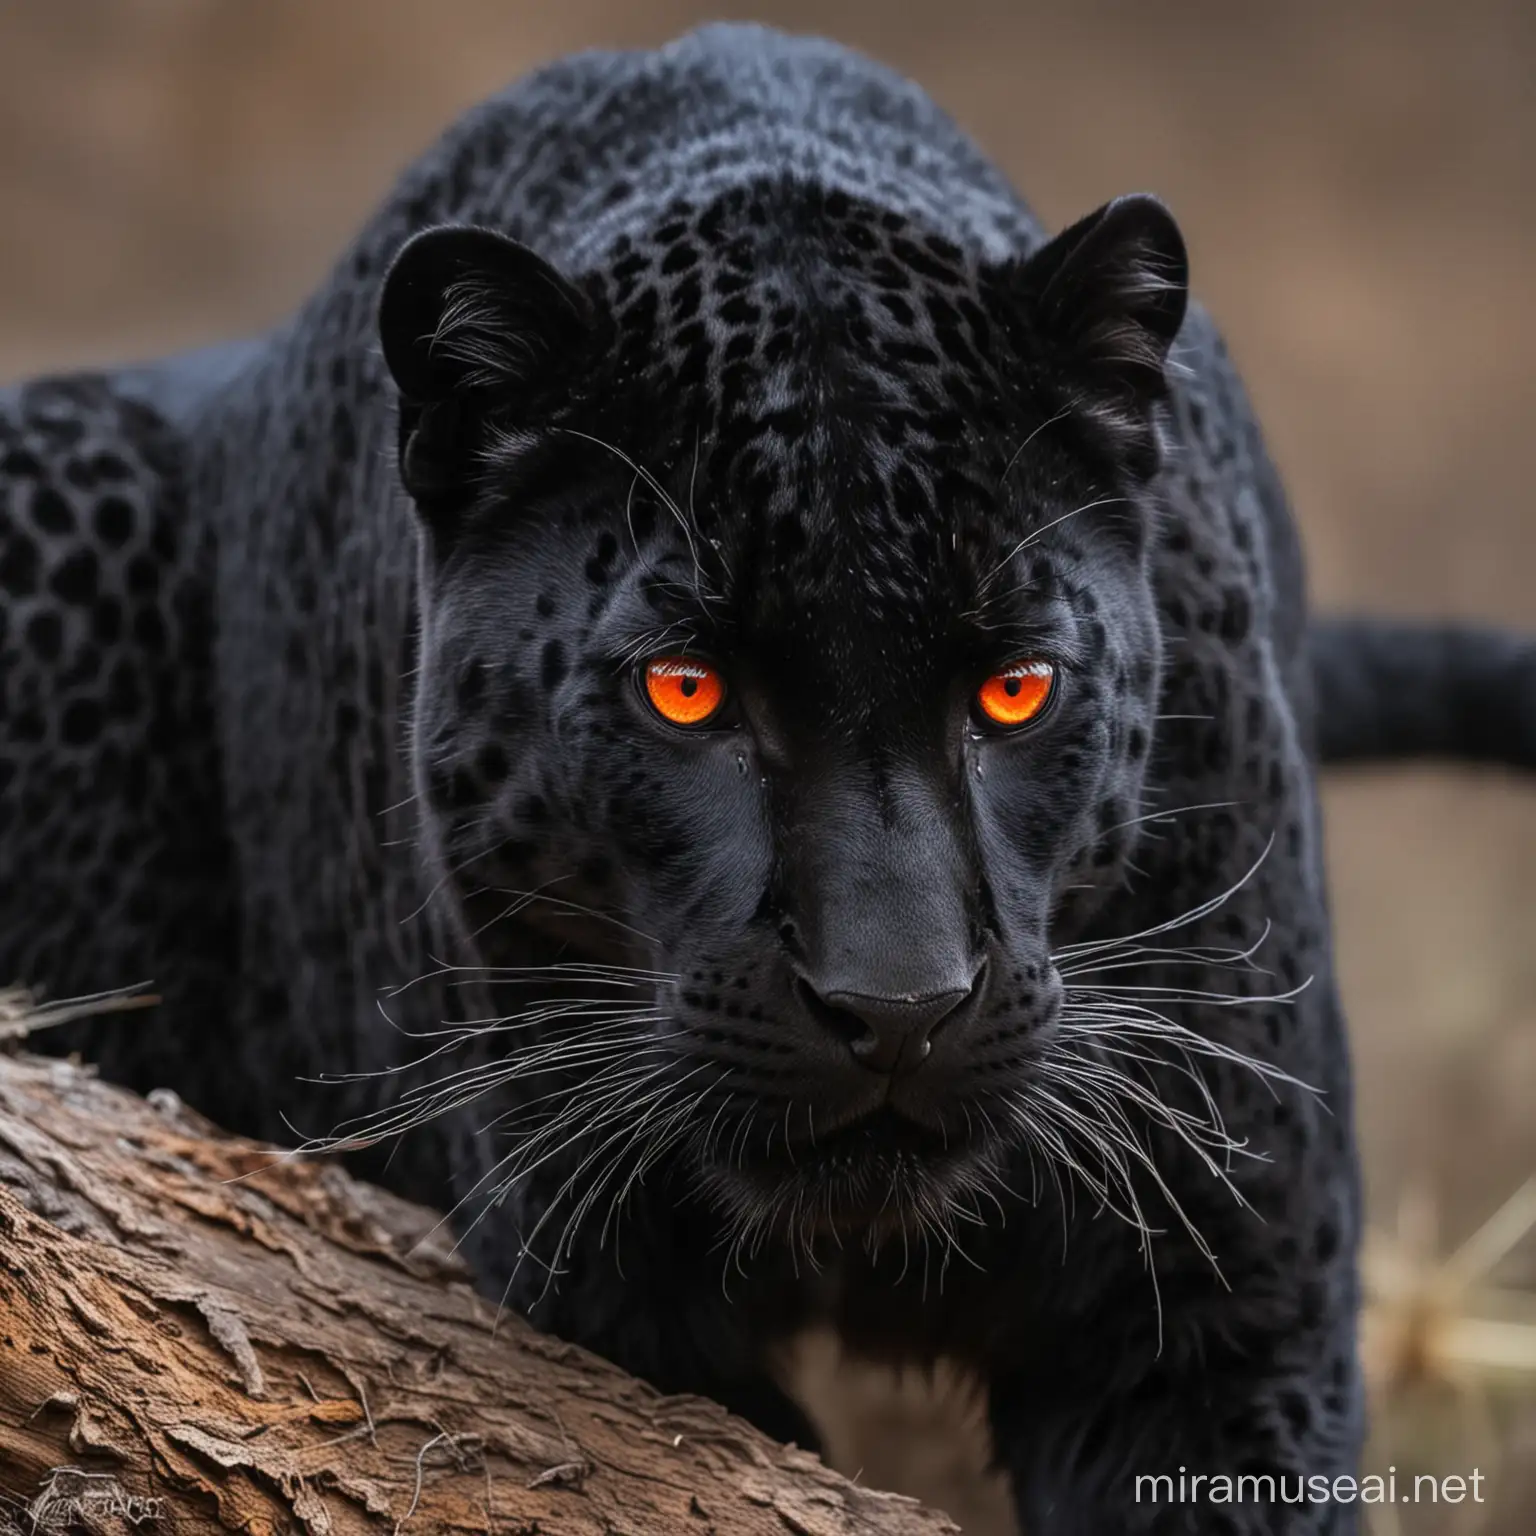 Eerie Black Leopard with Piercing Red Eyes